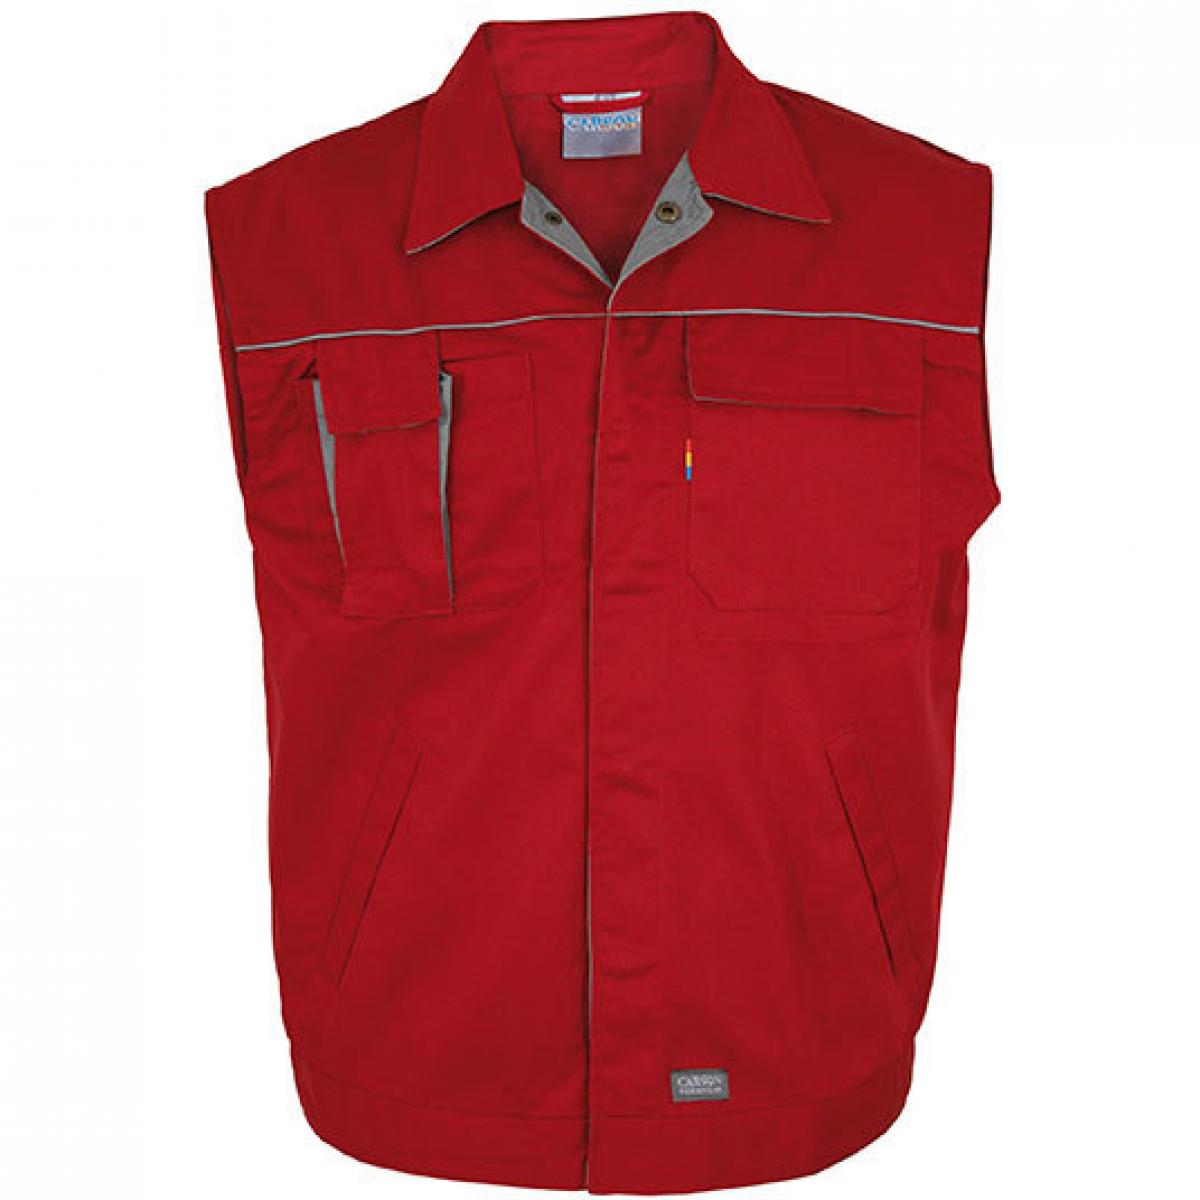 Hersteller: Carson Contrast Herstellernummer: CC700 Artikelbezeichnung: Herren Contrast Work Vest / Bei 60 Grad waschbar Farbe: Red/Grey